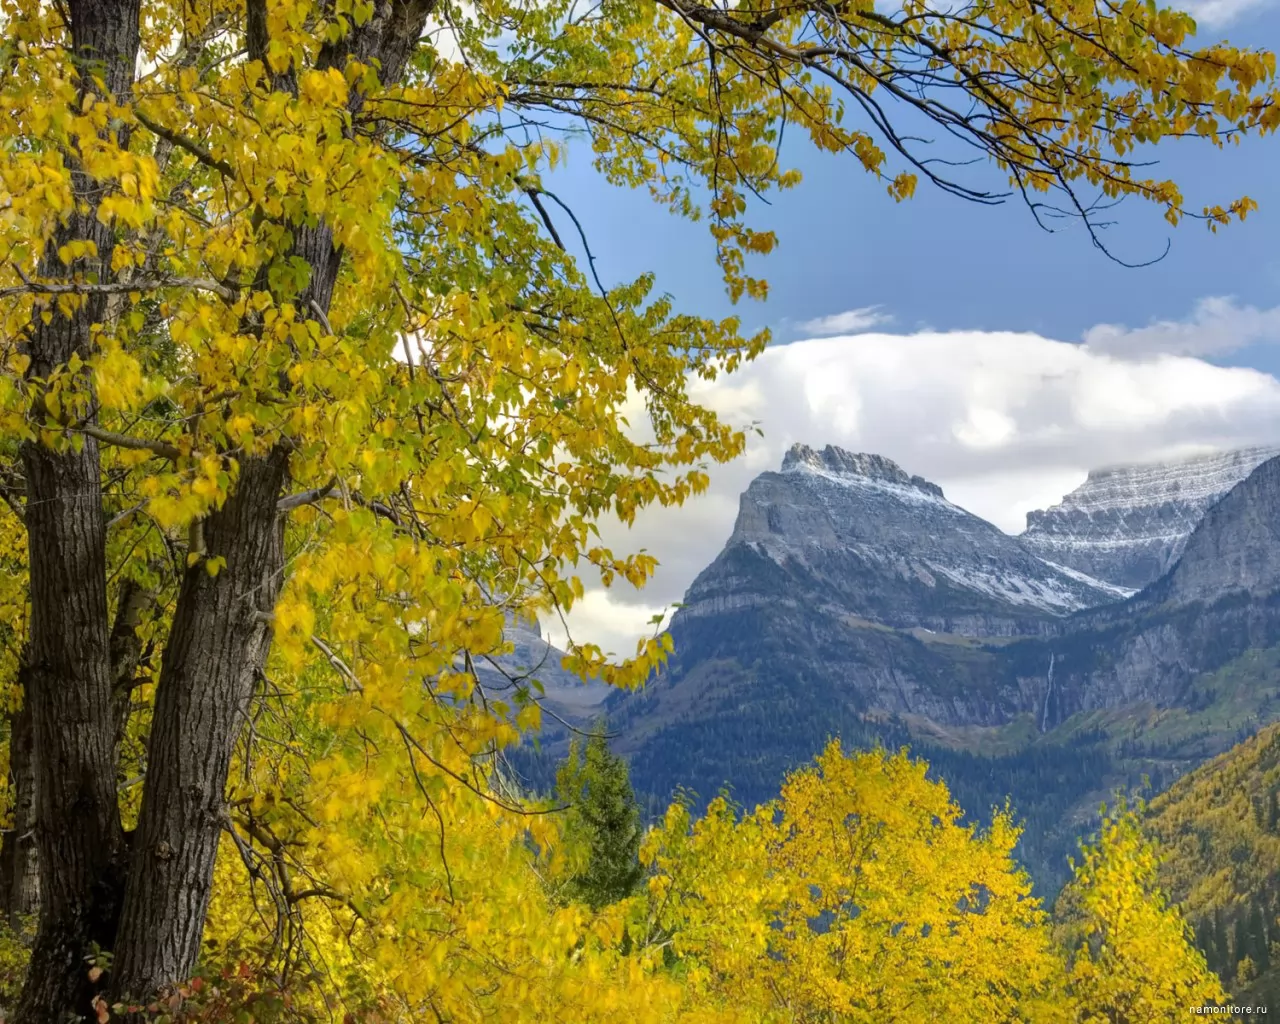 Монтана, Национальный Парк Ледников, гора Оберлин, Америка, горы, жёлтое, золотистое, осень, пейзажи, природа х